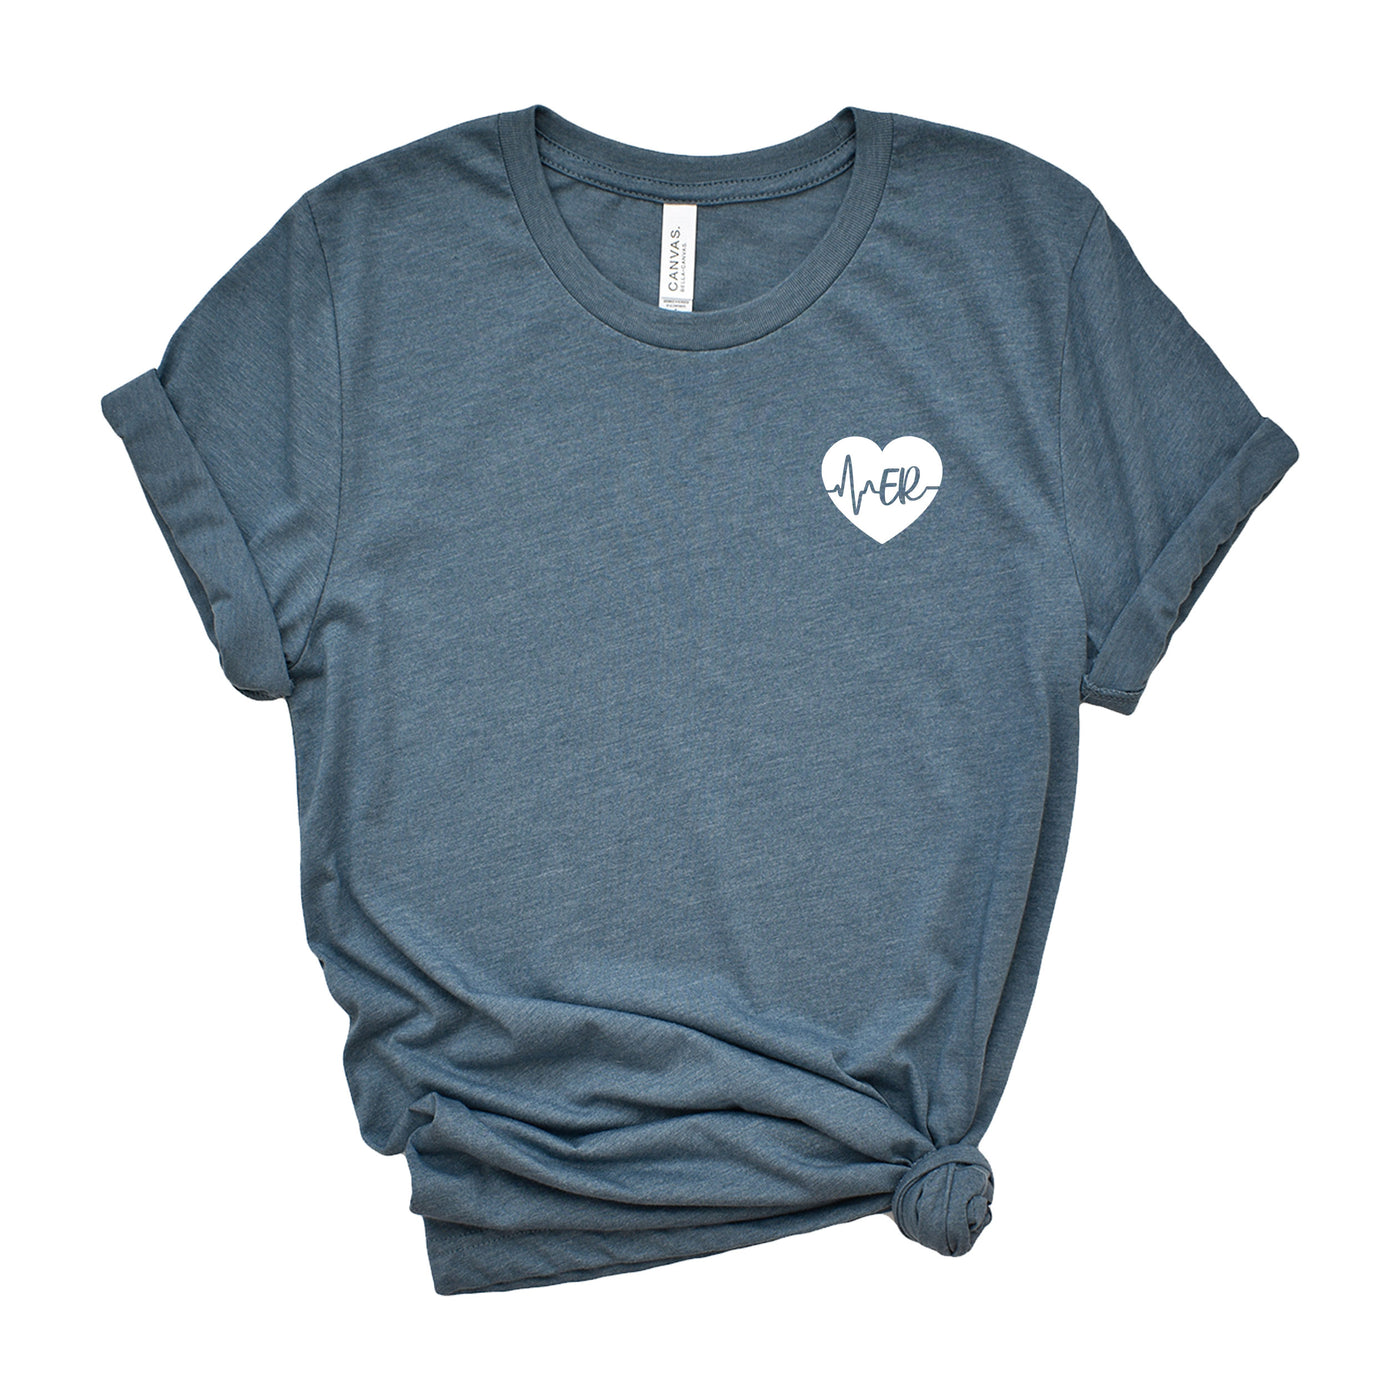 ER ECG Heart - Shirt